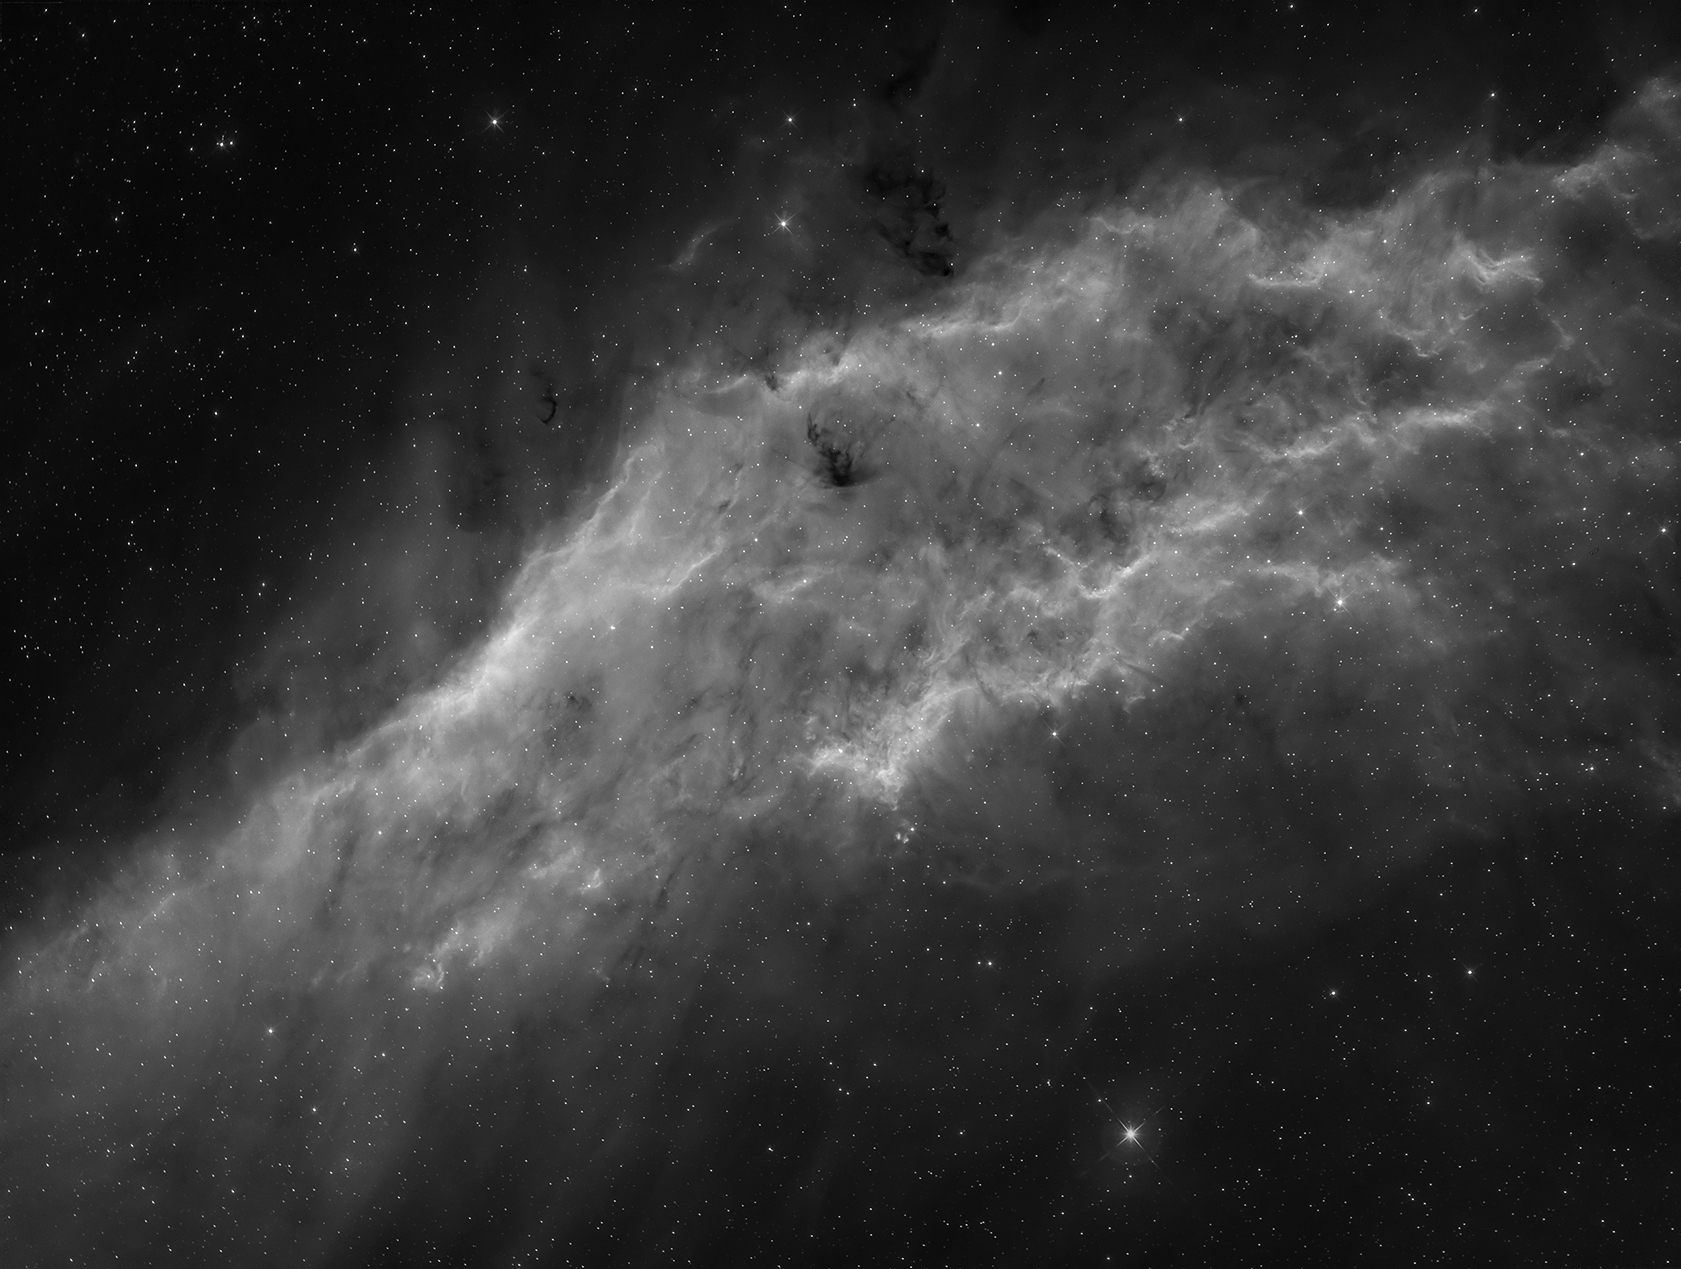 NGC 1499 - California Nebula in Hα